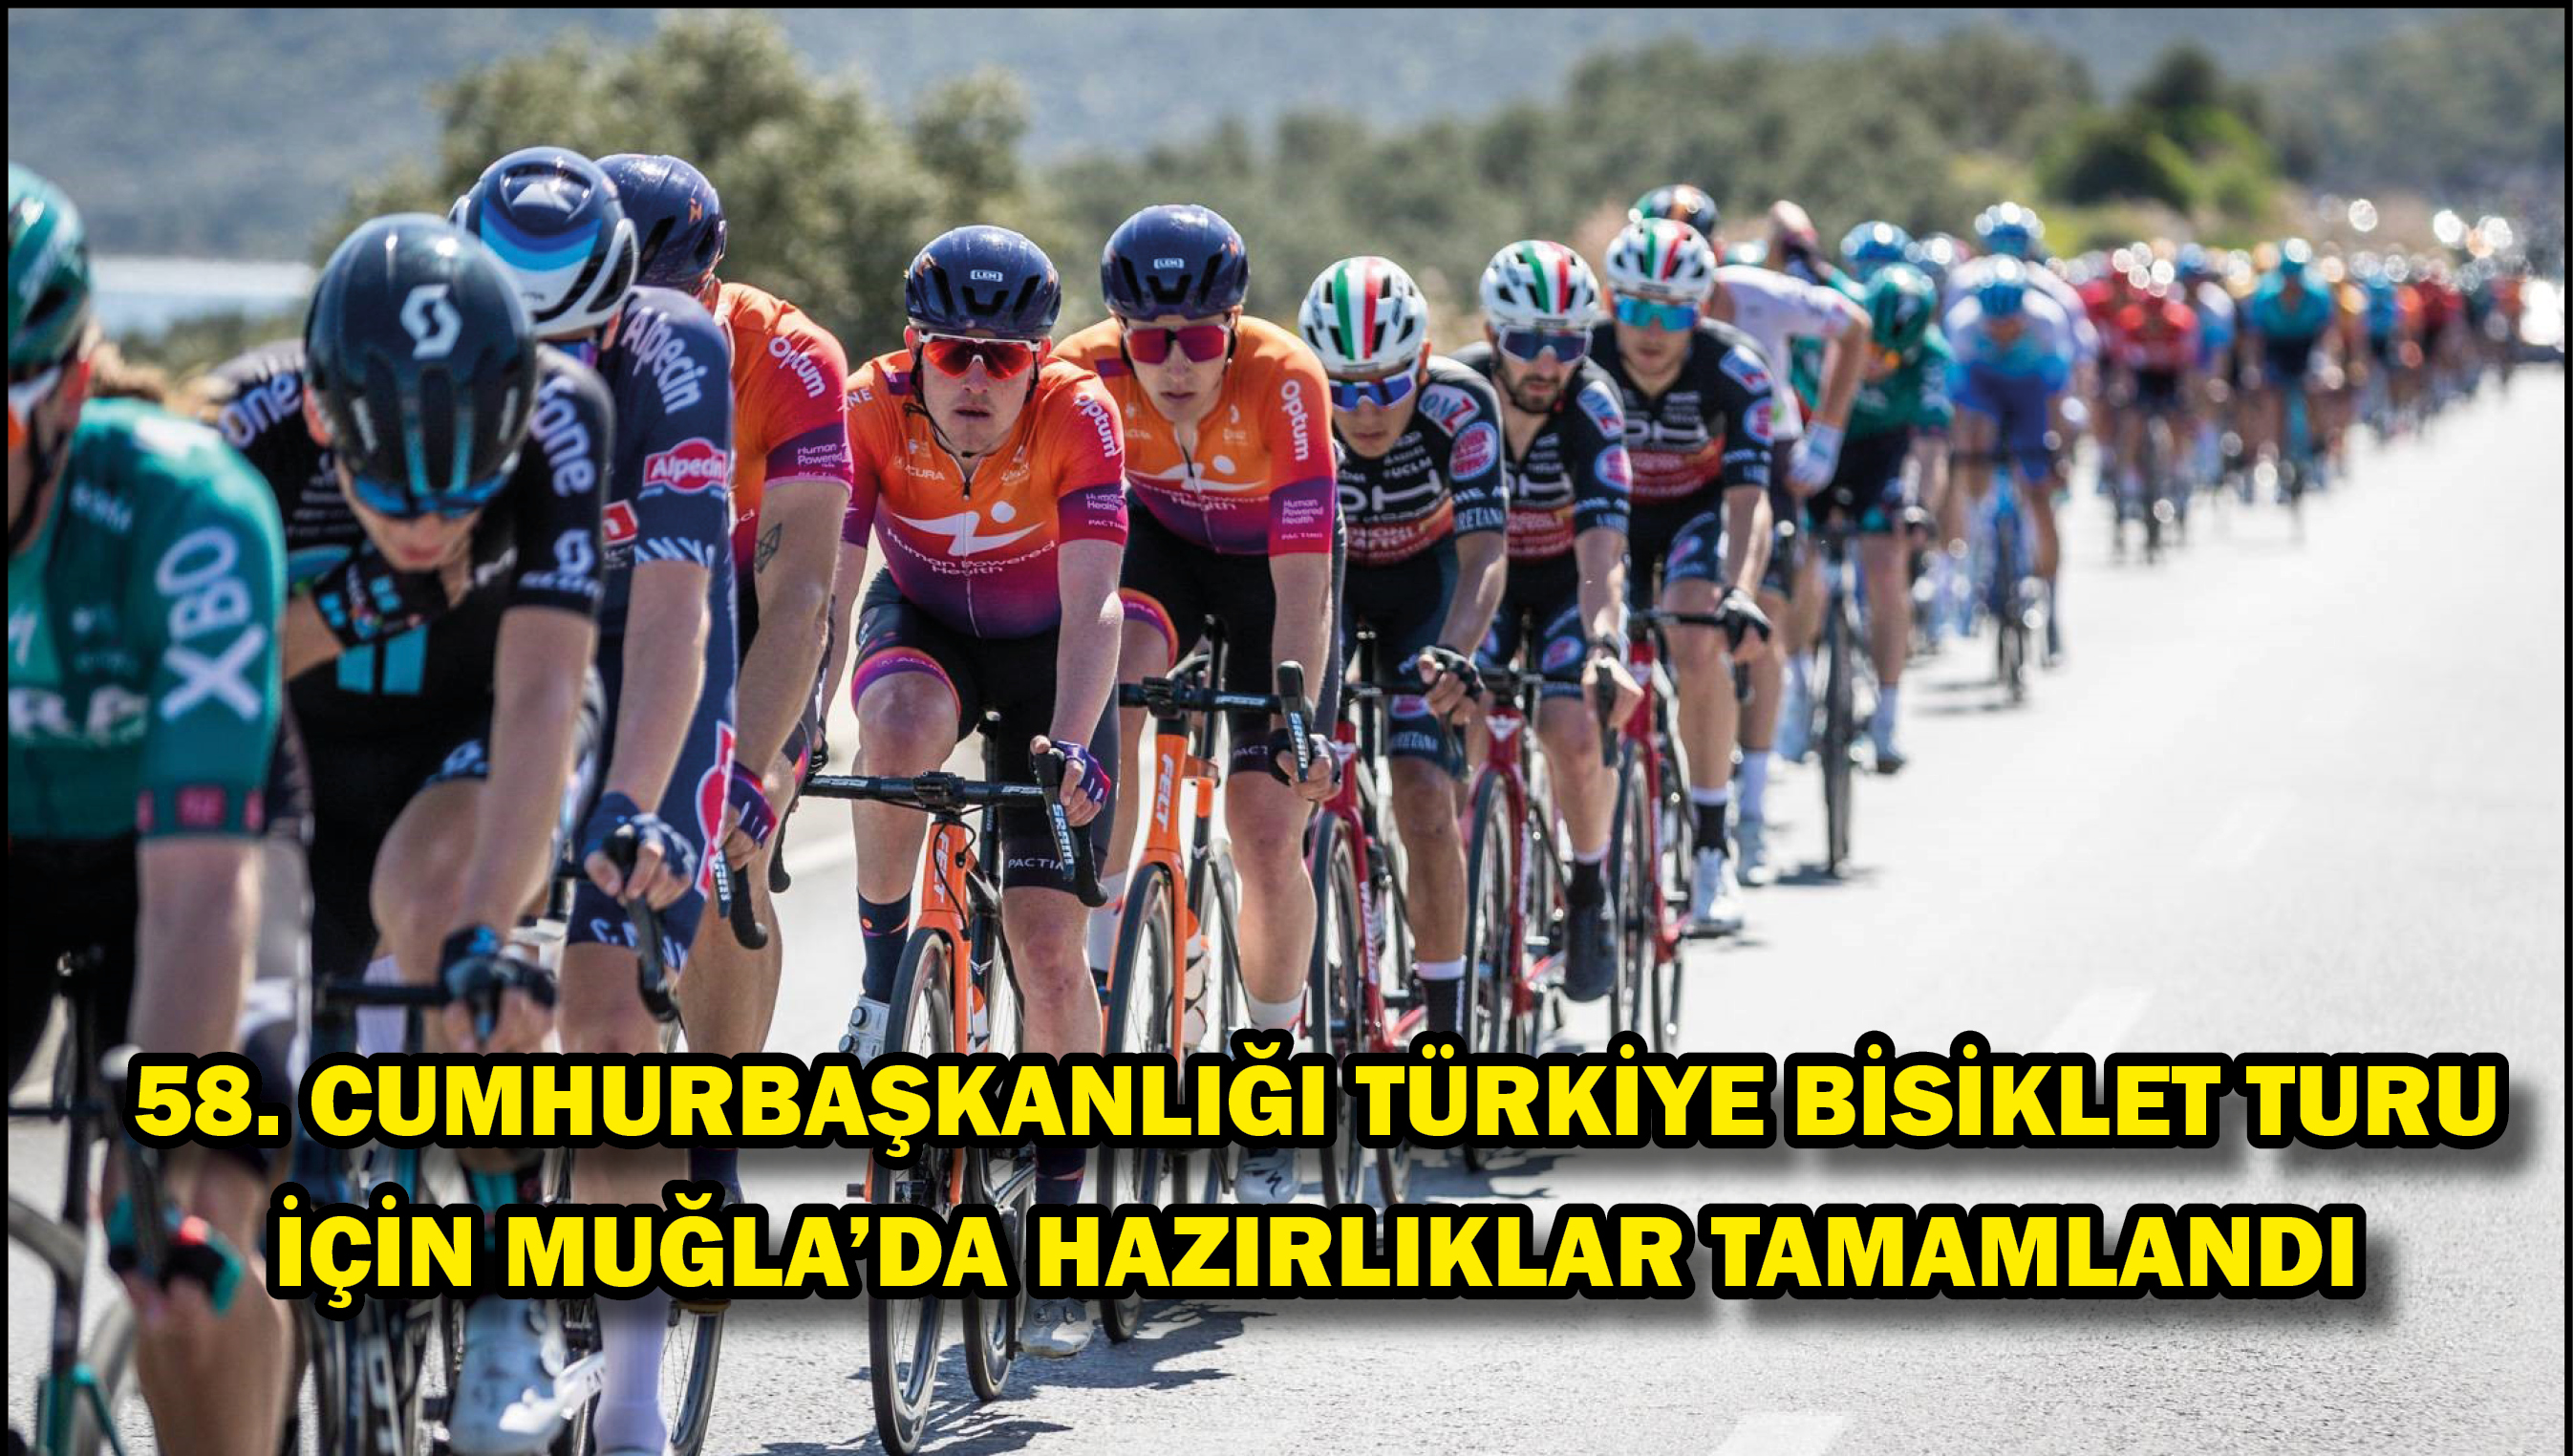 58. Cumhurbaşkanlığı Türkiye Bisiklet Turu için Muğla'da hazırlıklar tamamlandı